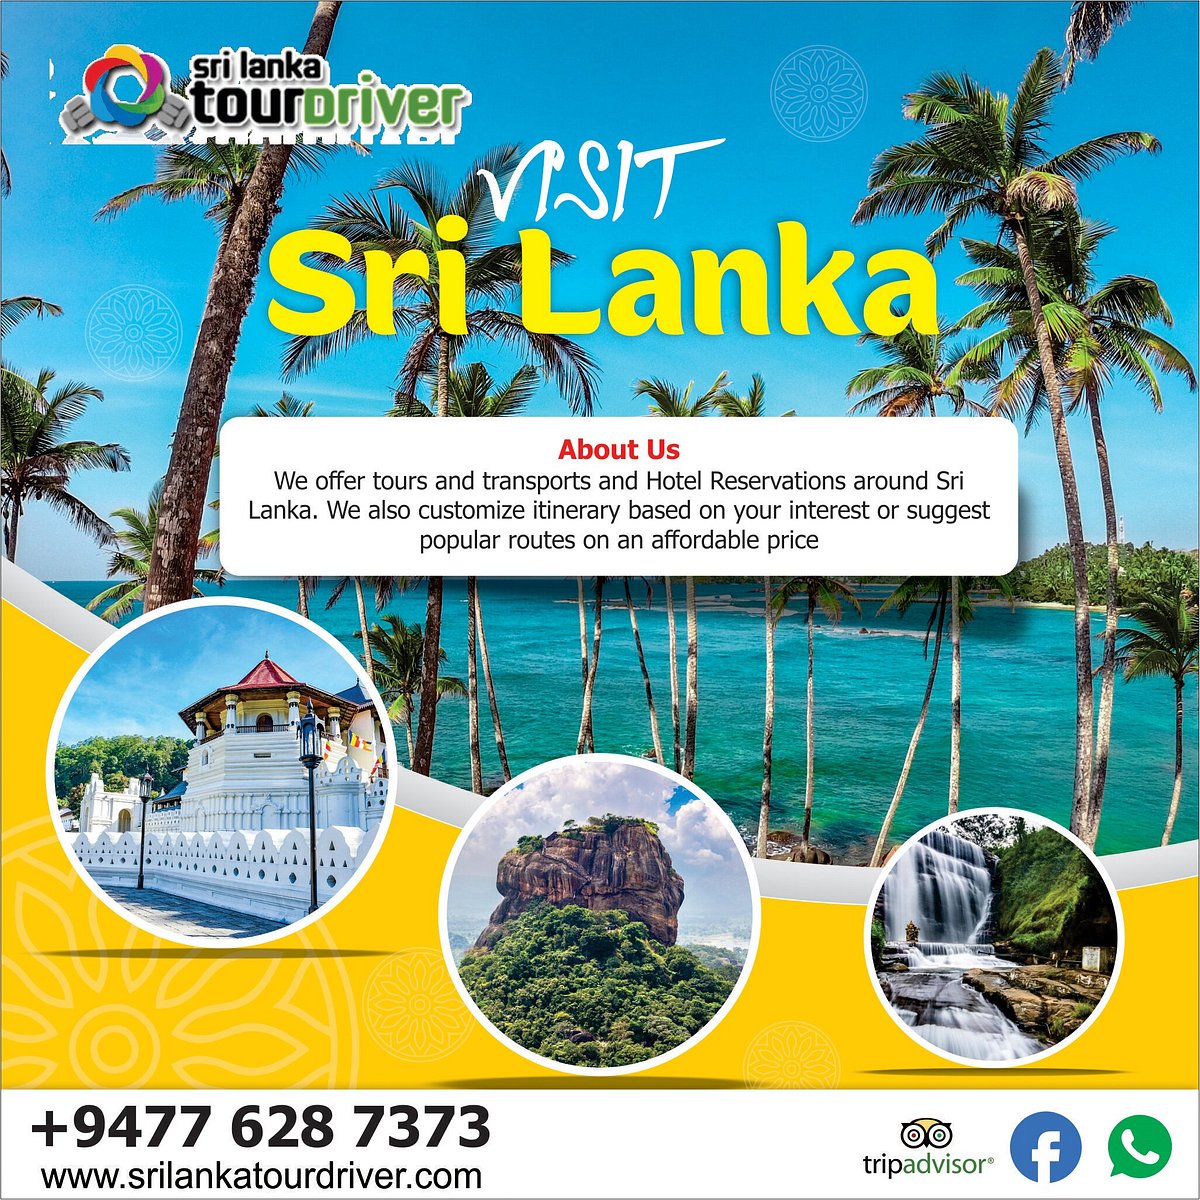 sri lanka tour packages from sri lanka